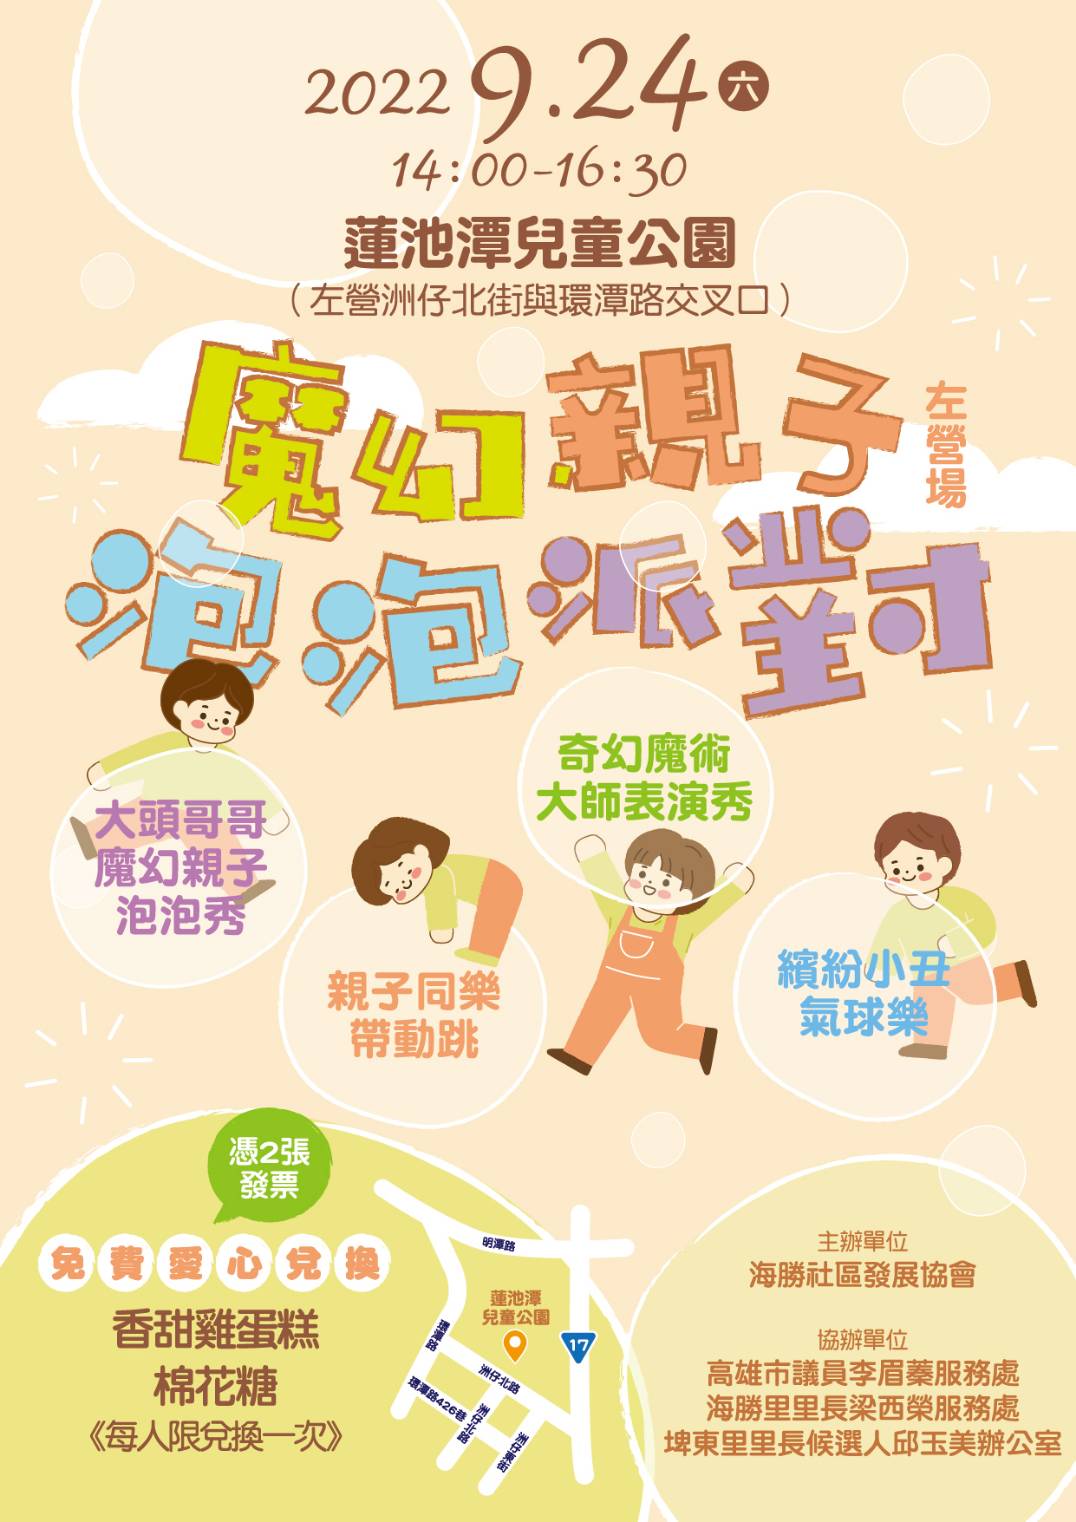 9月24日 魔幻親子泡泡派對(左營場) X 大型氣墊床公益活動  蓮潭兒童公園登場